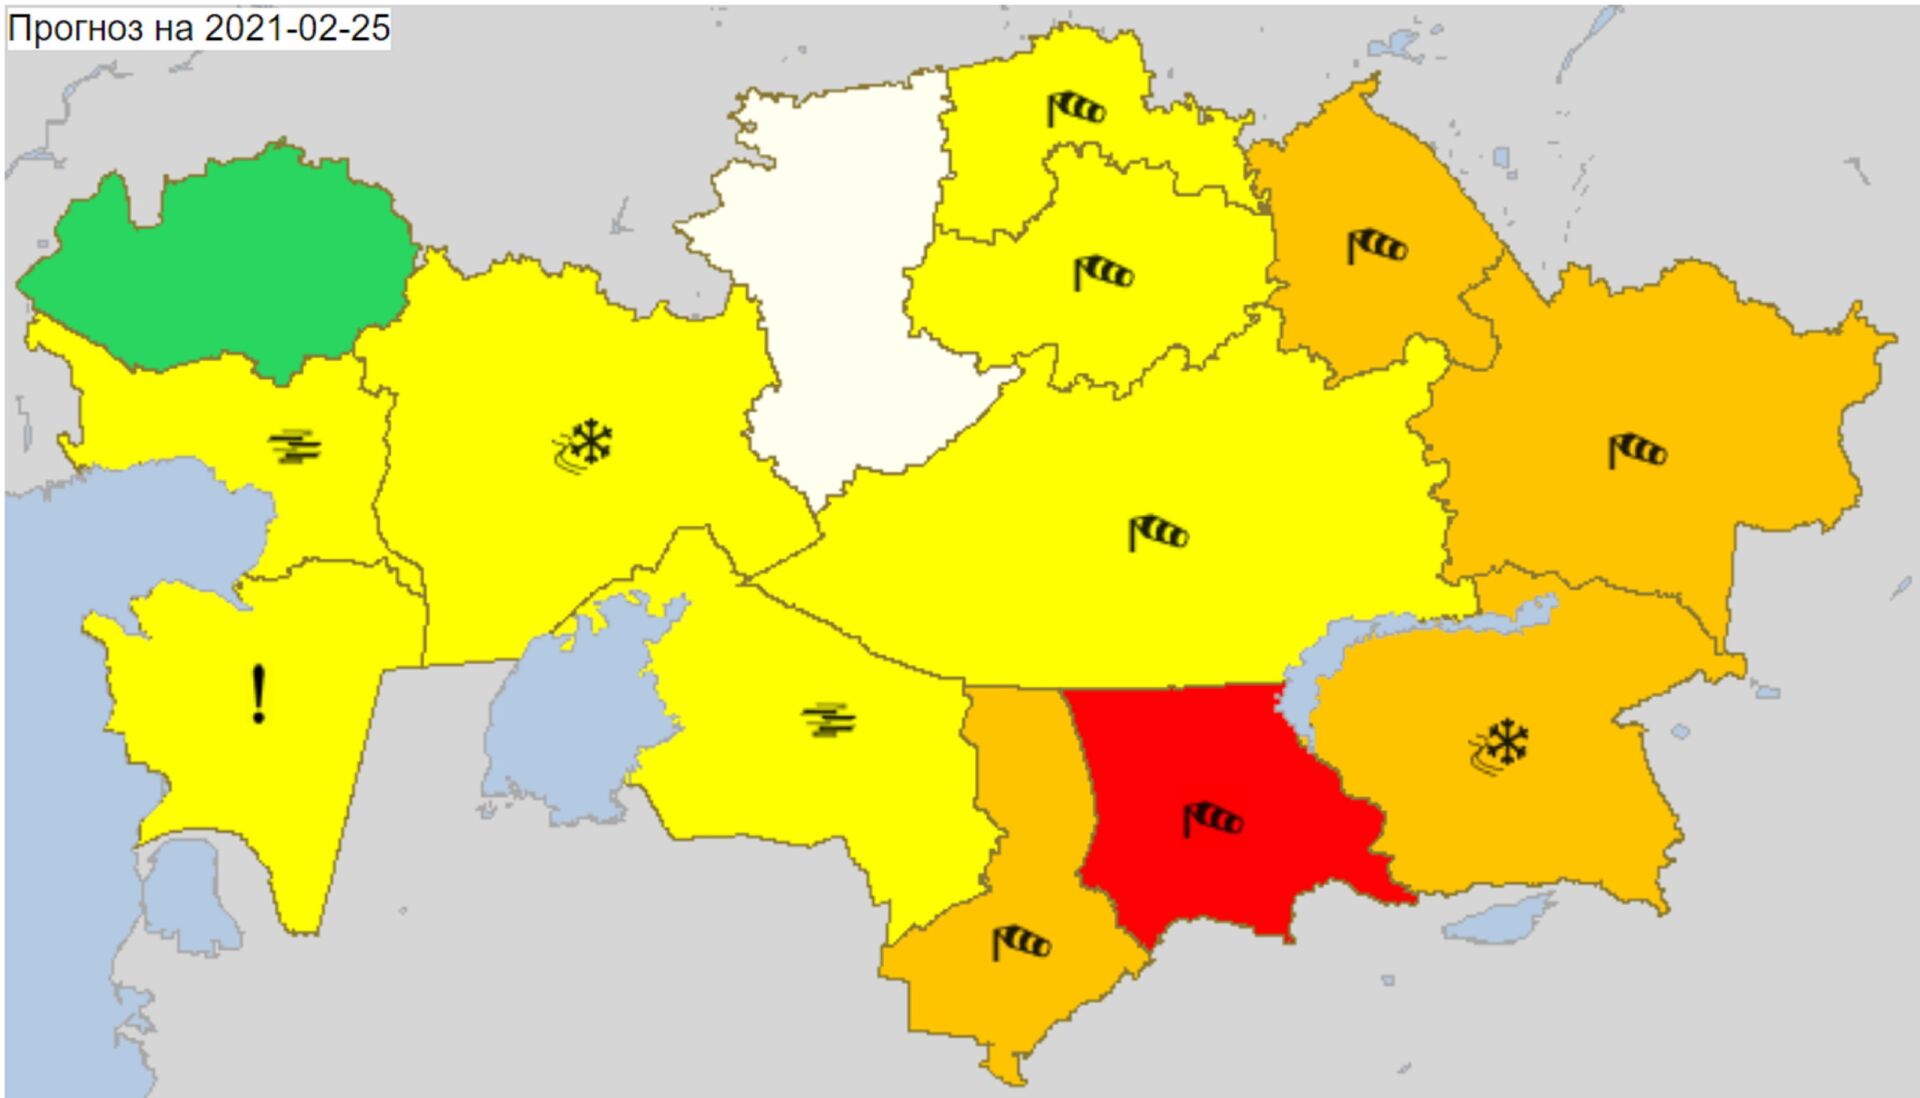 В шести областях Казахстана объявлено штормовое предупреждение - Sputnik Казахстан, 1920, 24.02.2021